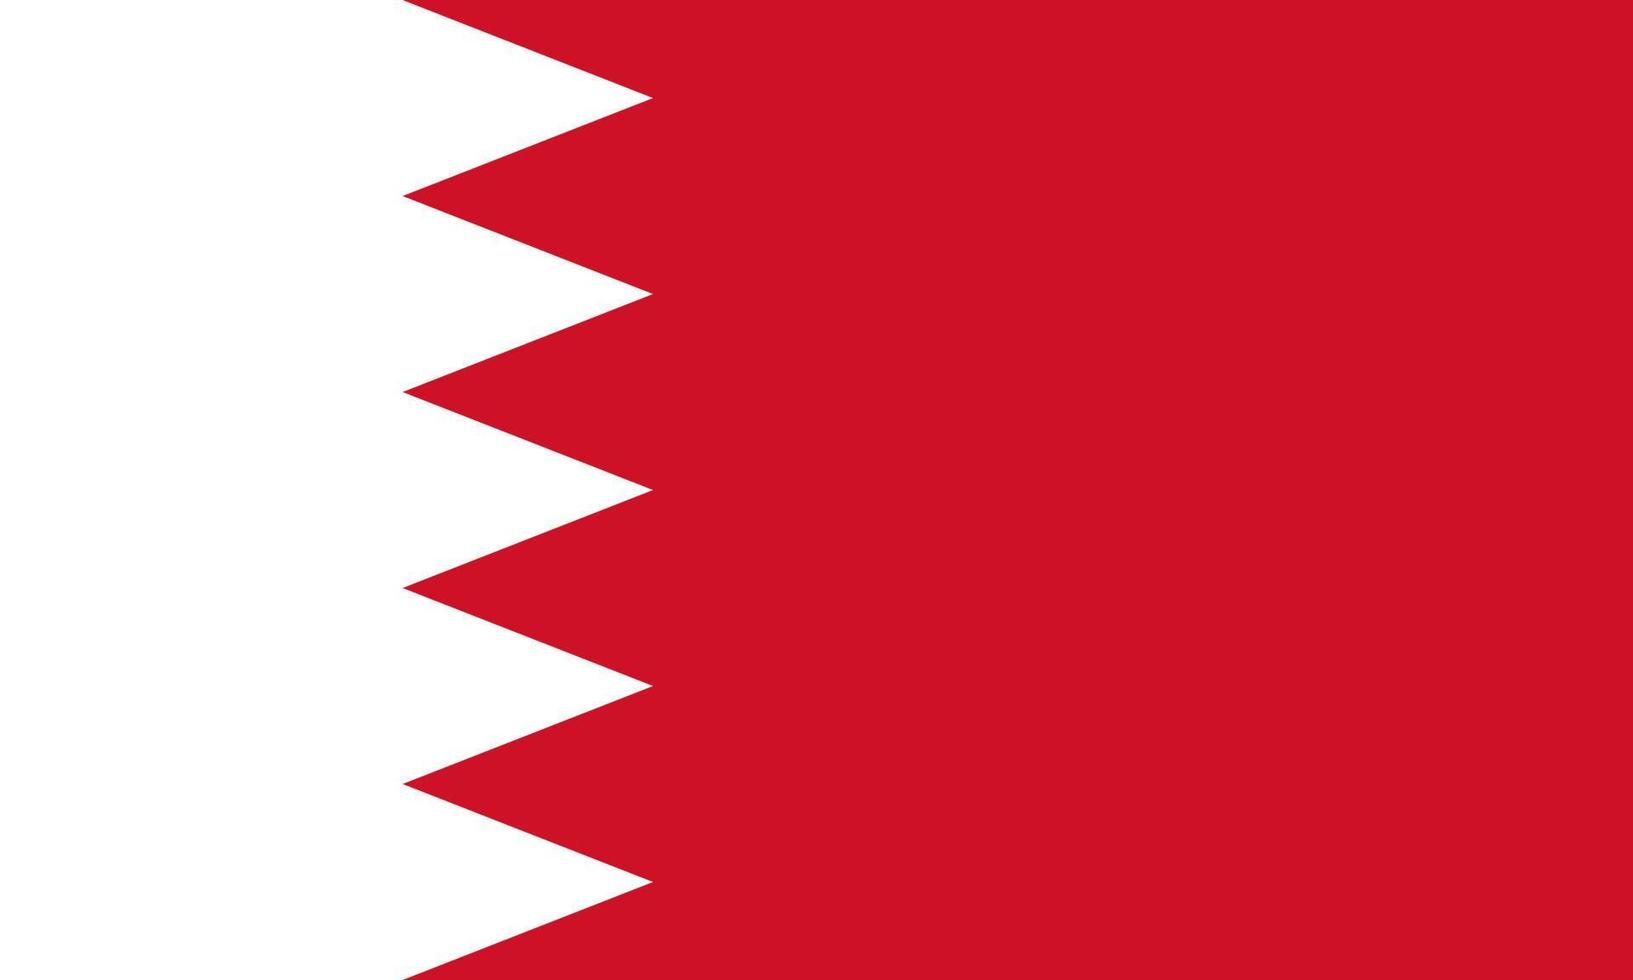 drapeau bahreïn symbole d'illustration vectorielle icône nationale du pays. liberté nation drapeau Bahreïn indépendance patriotisme célébration conception gouvernement international officiel symbolique objet Culture vecteur